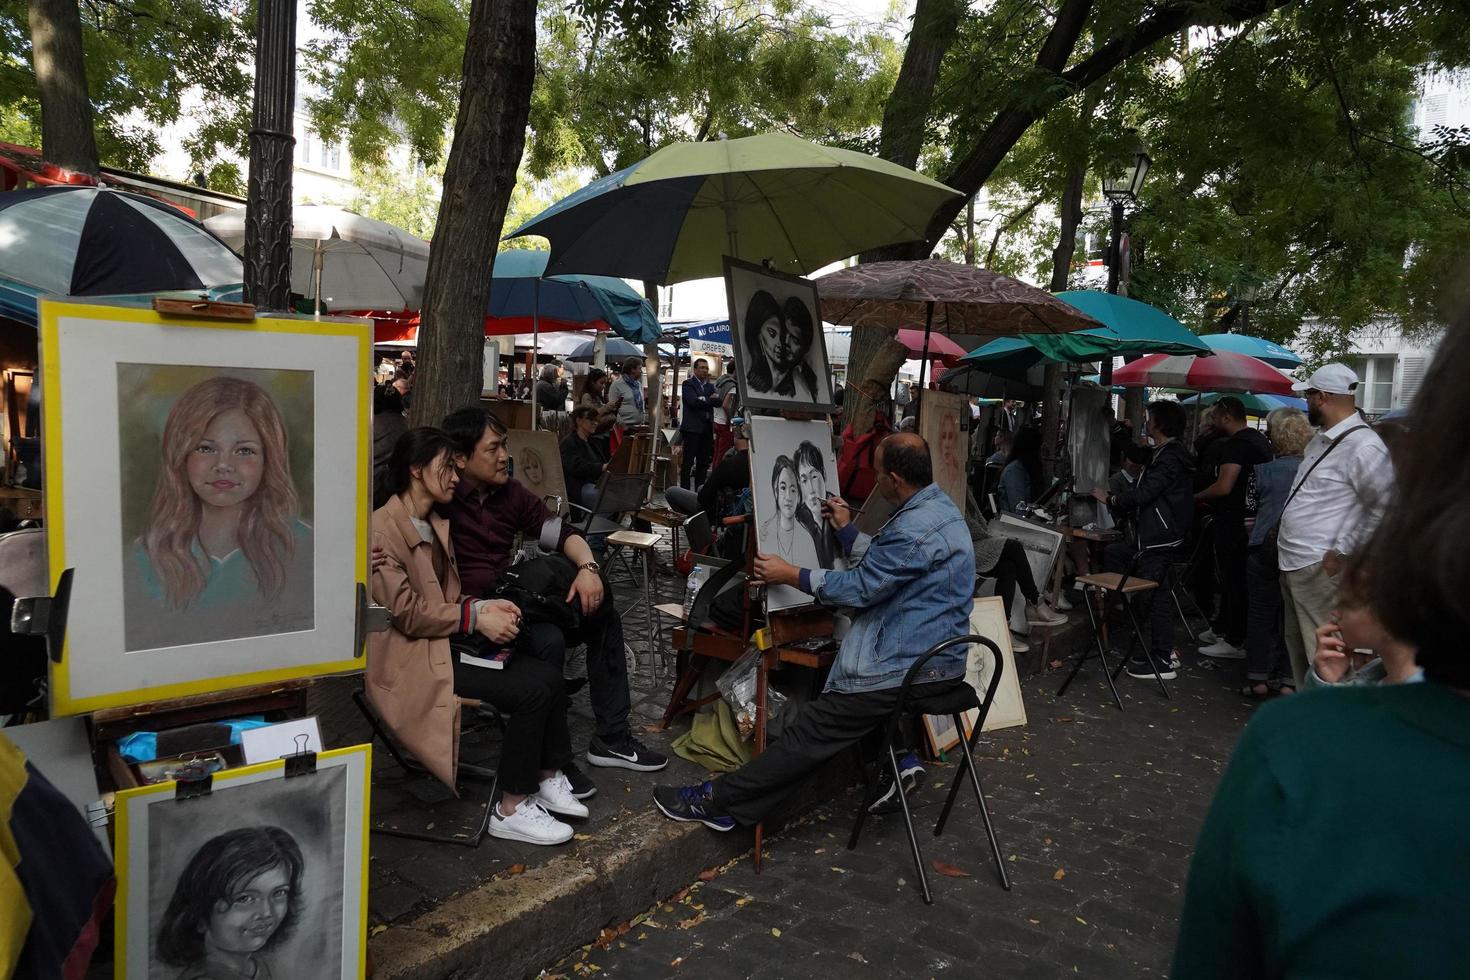 Paris, Frankreich - 6. Oktober 2018 - Künstler und Tourist in Montmartre foto